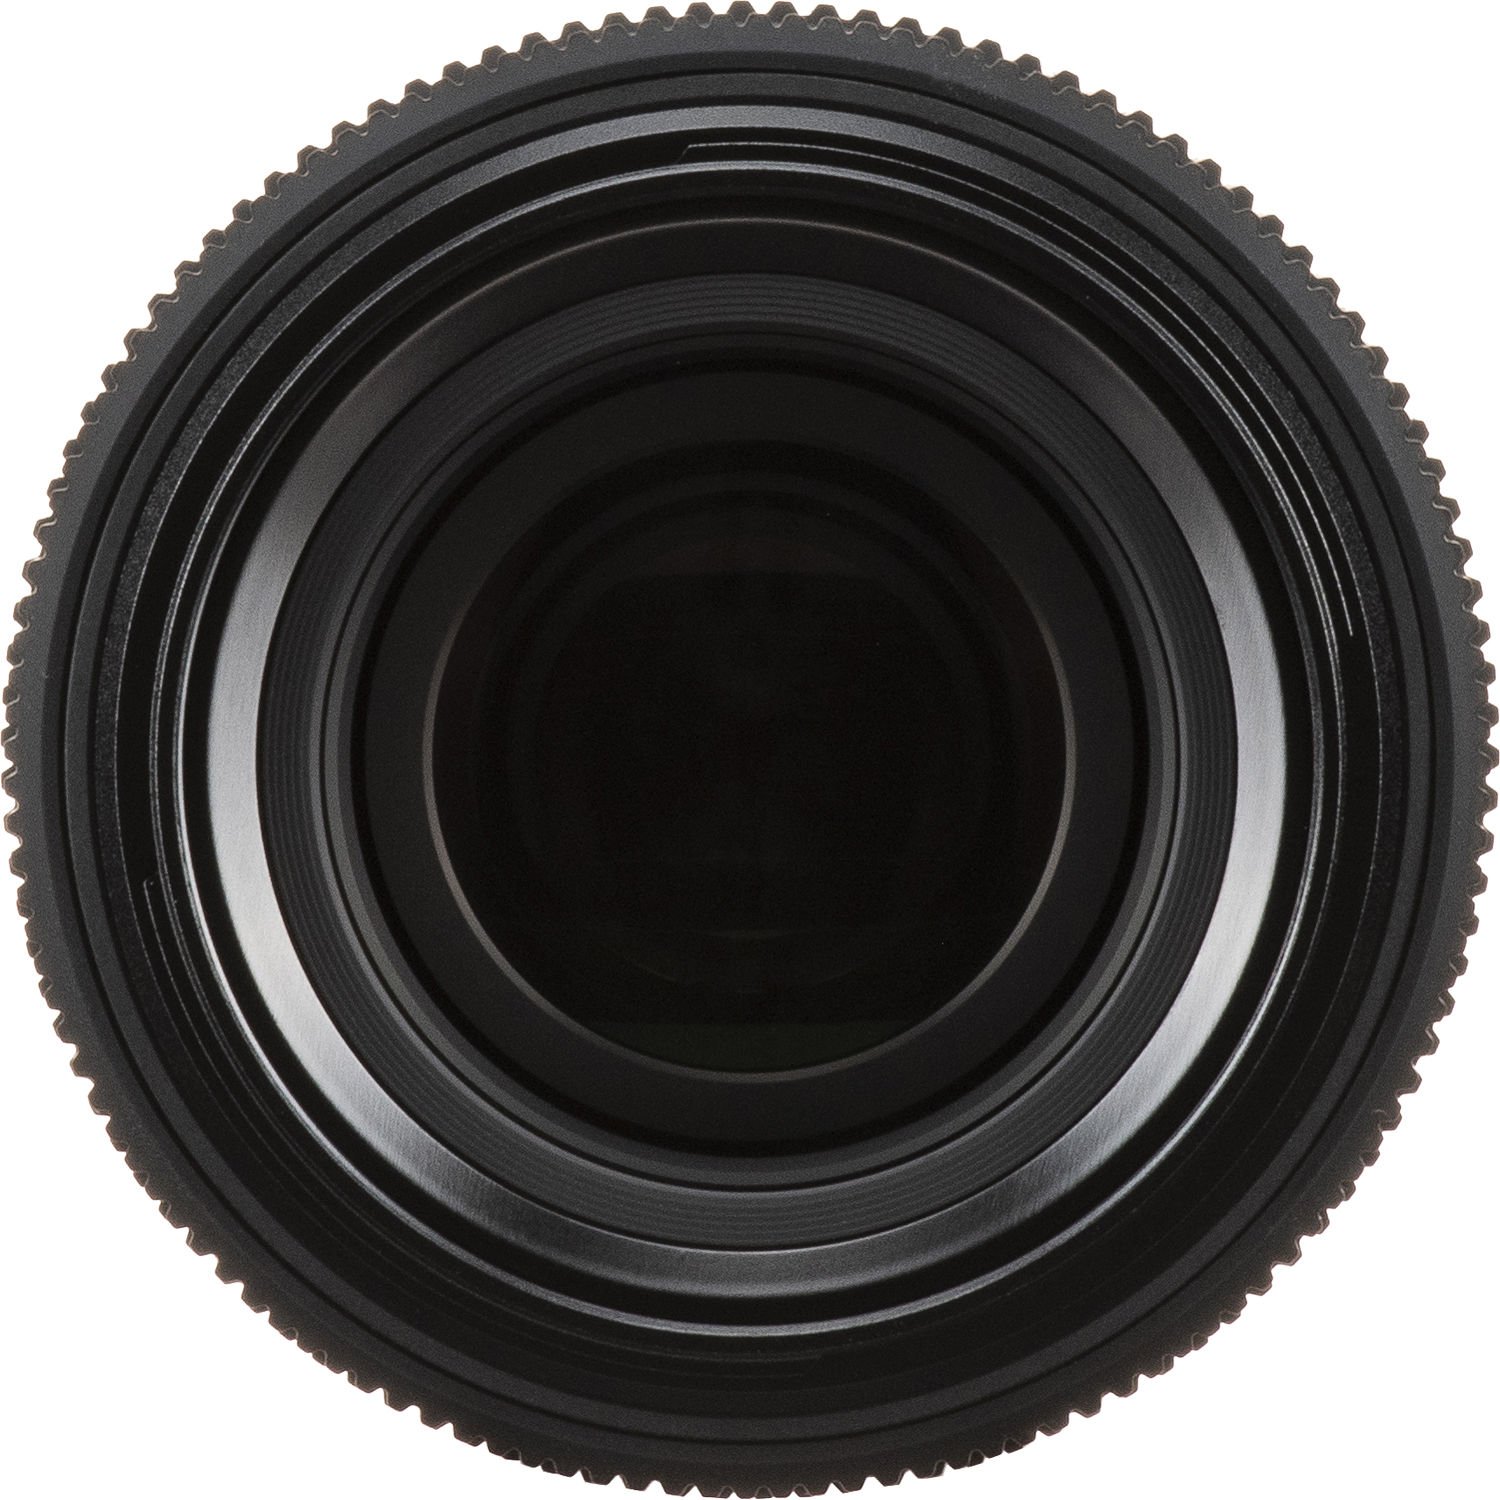 Thiết kế quang học chất lượng của ống kính Fujifilm GF 100-200mm f5.6